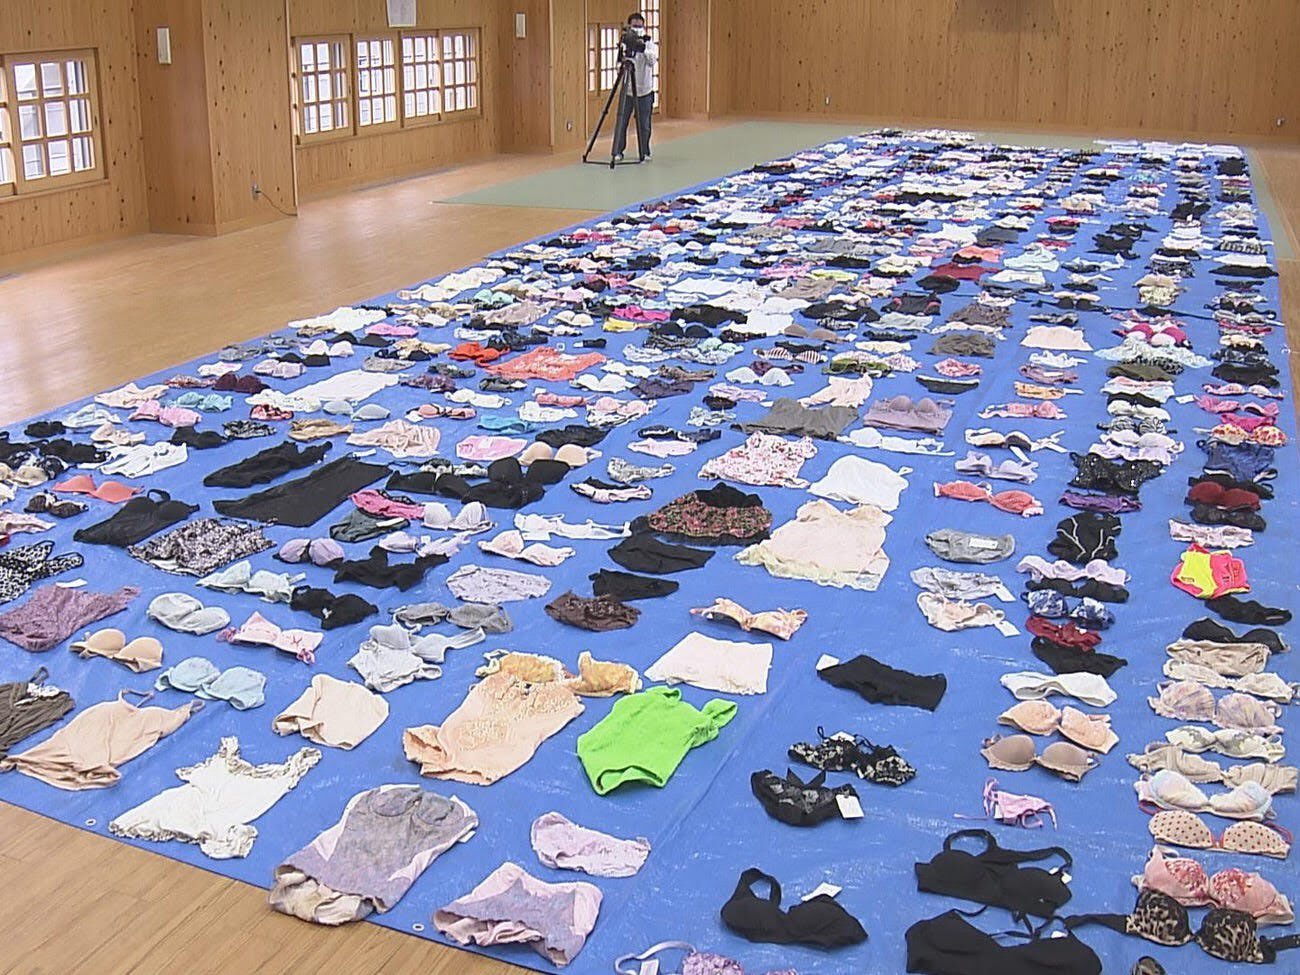 Japonês de 56 anos é preso por roubar mais de 700 roupas íntimas femininas